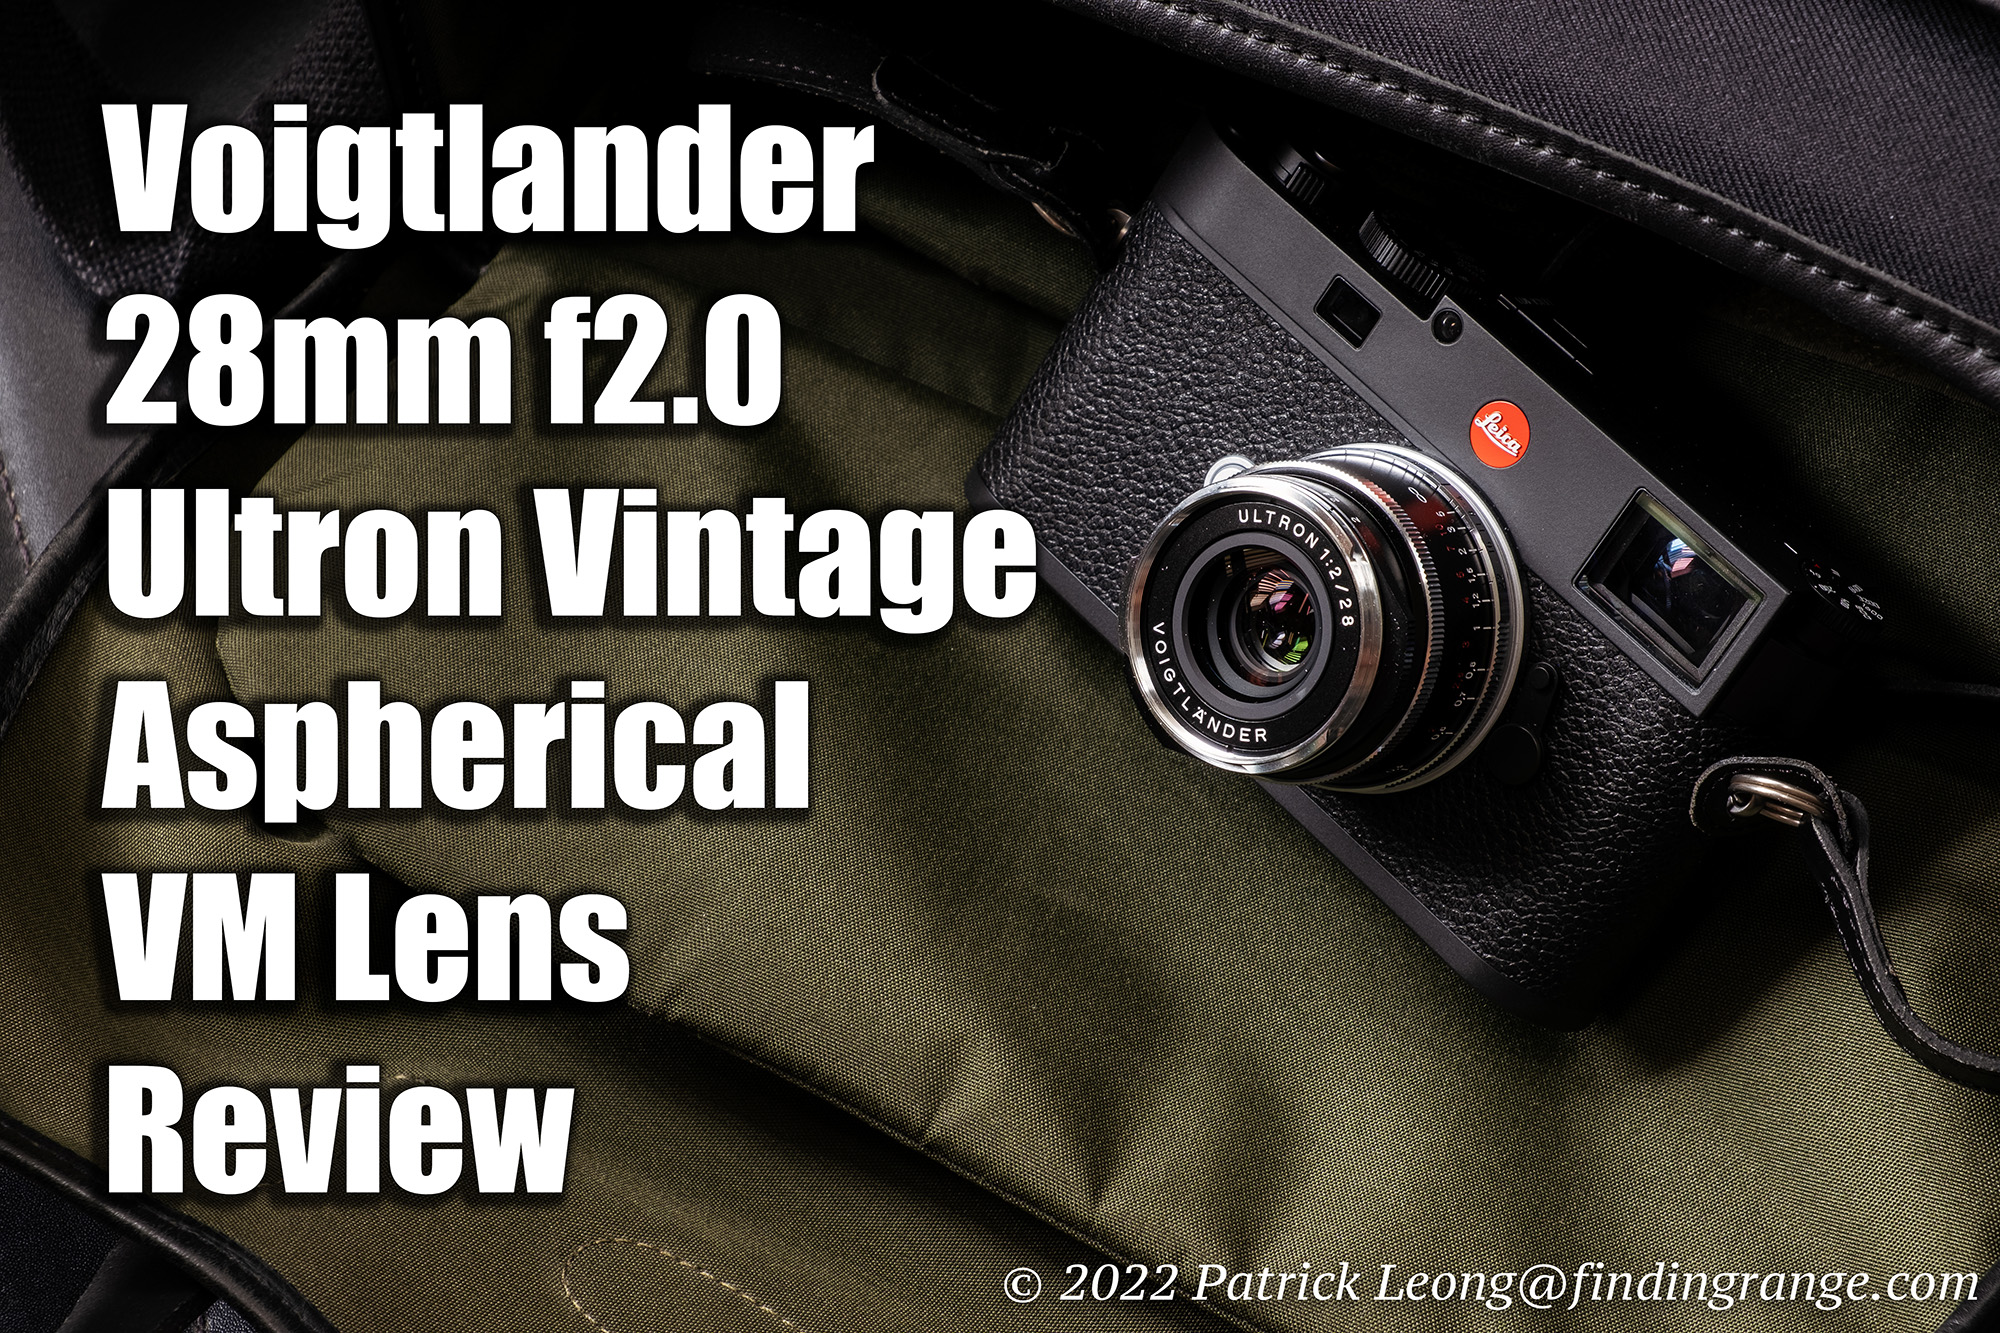 Voigtlander 28mm f2.0 Ultron Vintage Aspherical Review - Finding Range